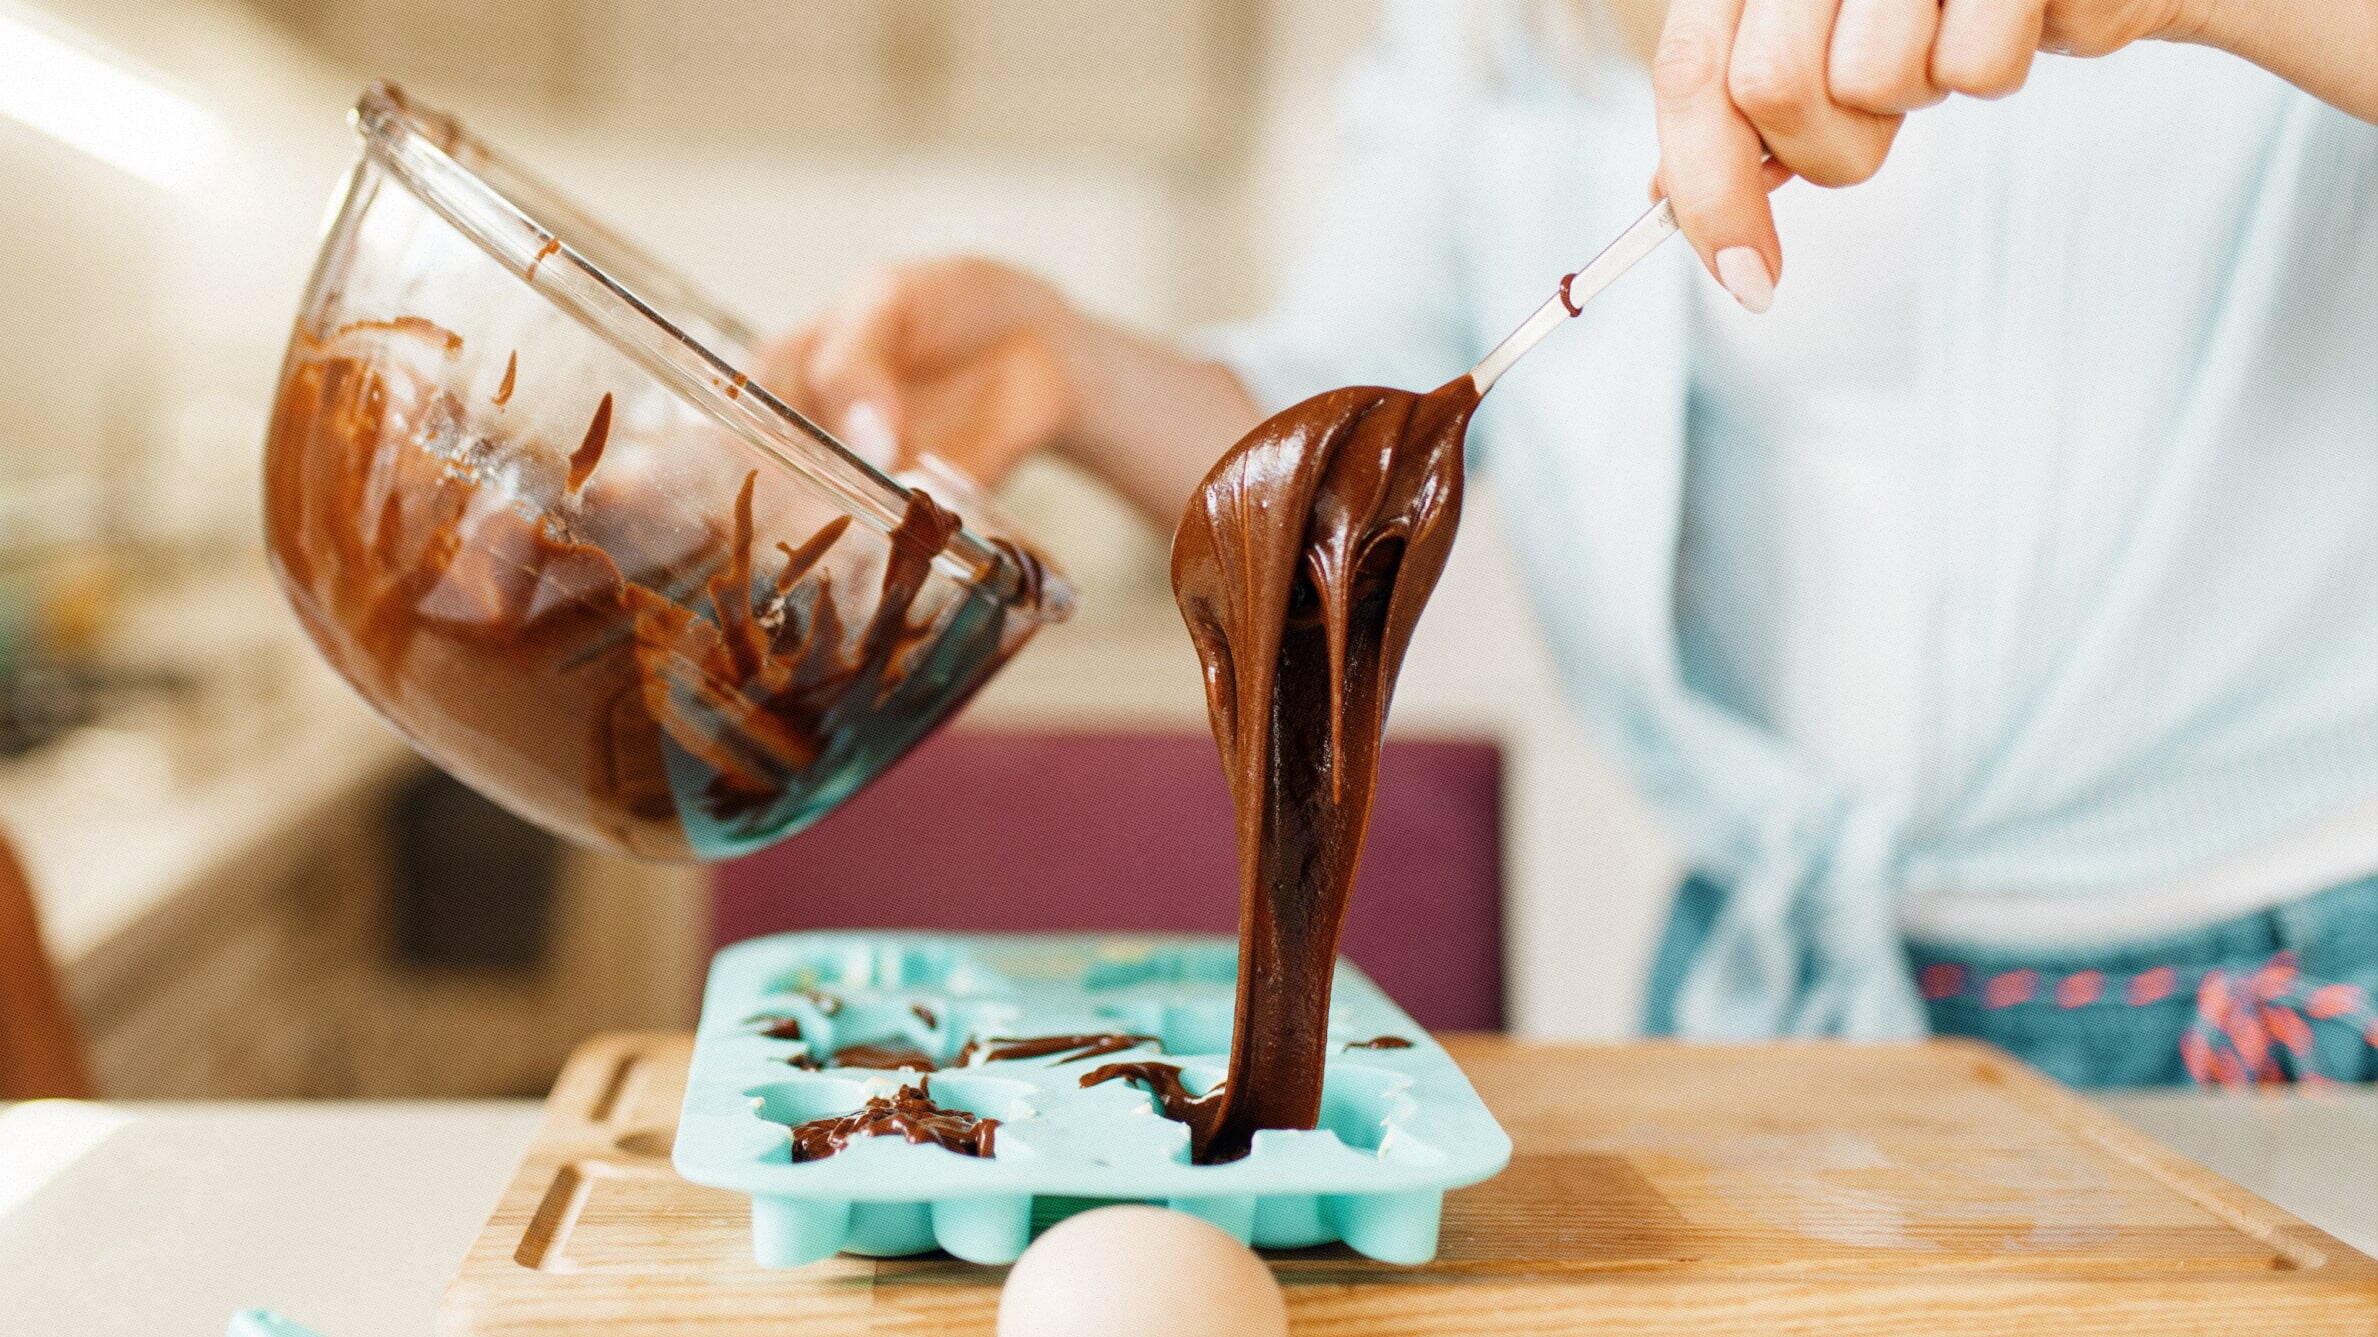 Как приготовить домашний шоколад из какао — простой рецепт - Чемпионат